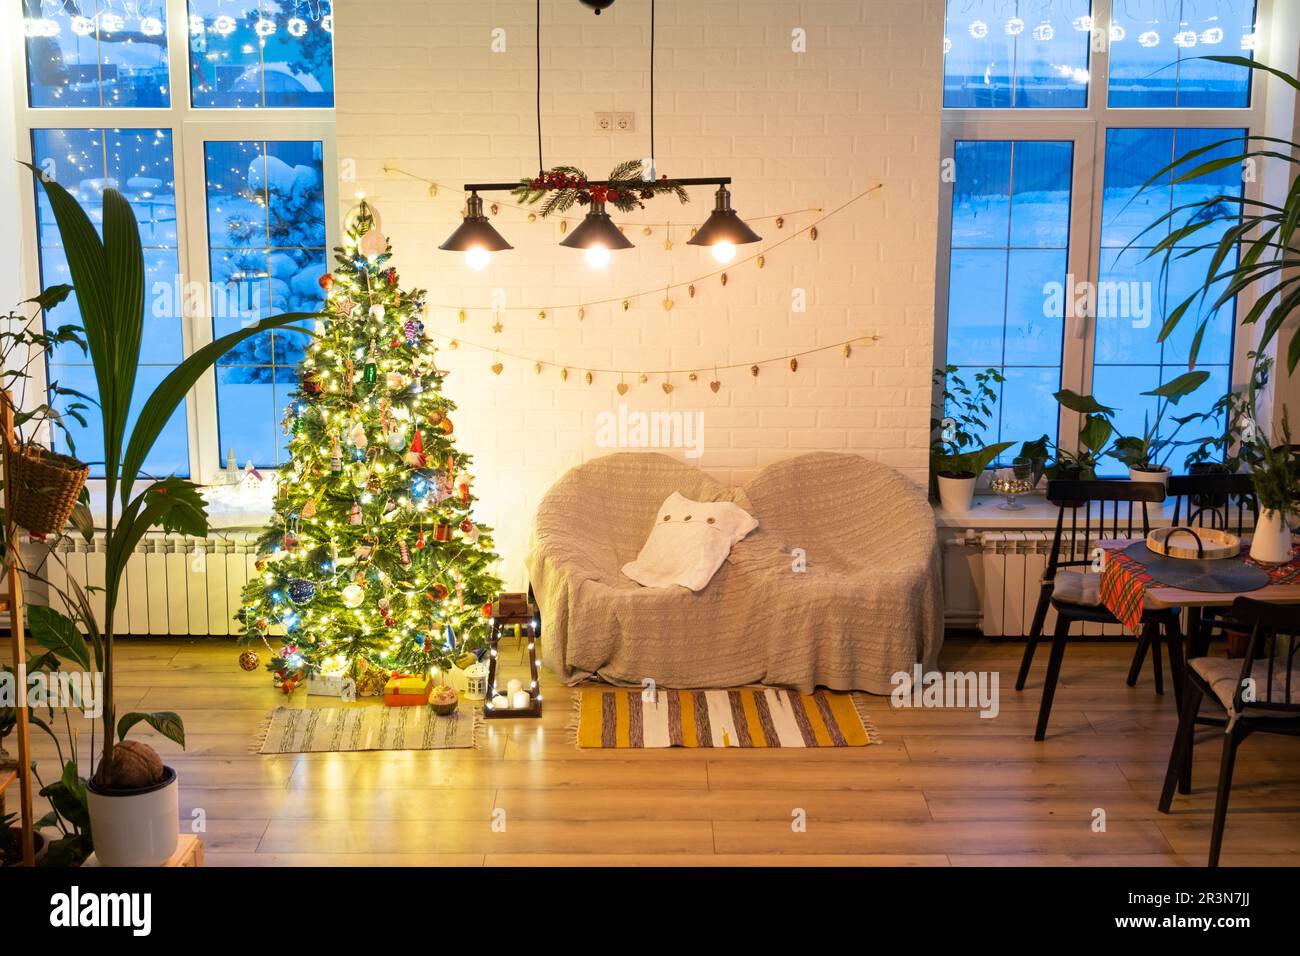 Arbre de Noël dans l'intérieur blanc d'une maison avec des murs de briques de style loft avec guirlande de jouets en verre sur une corde. Guirlande lumineuse de lumières de la décoration Banque D'Images